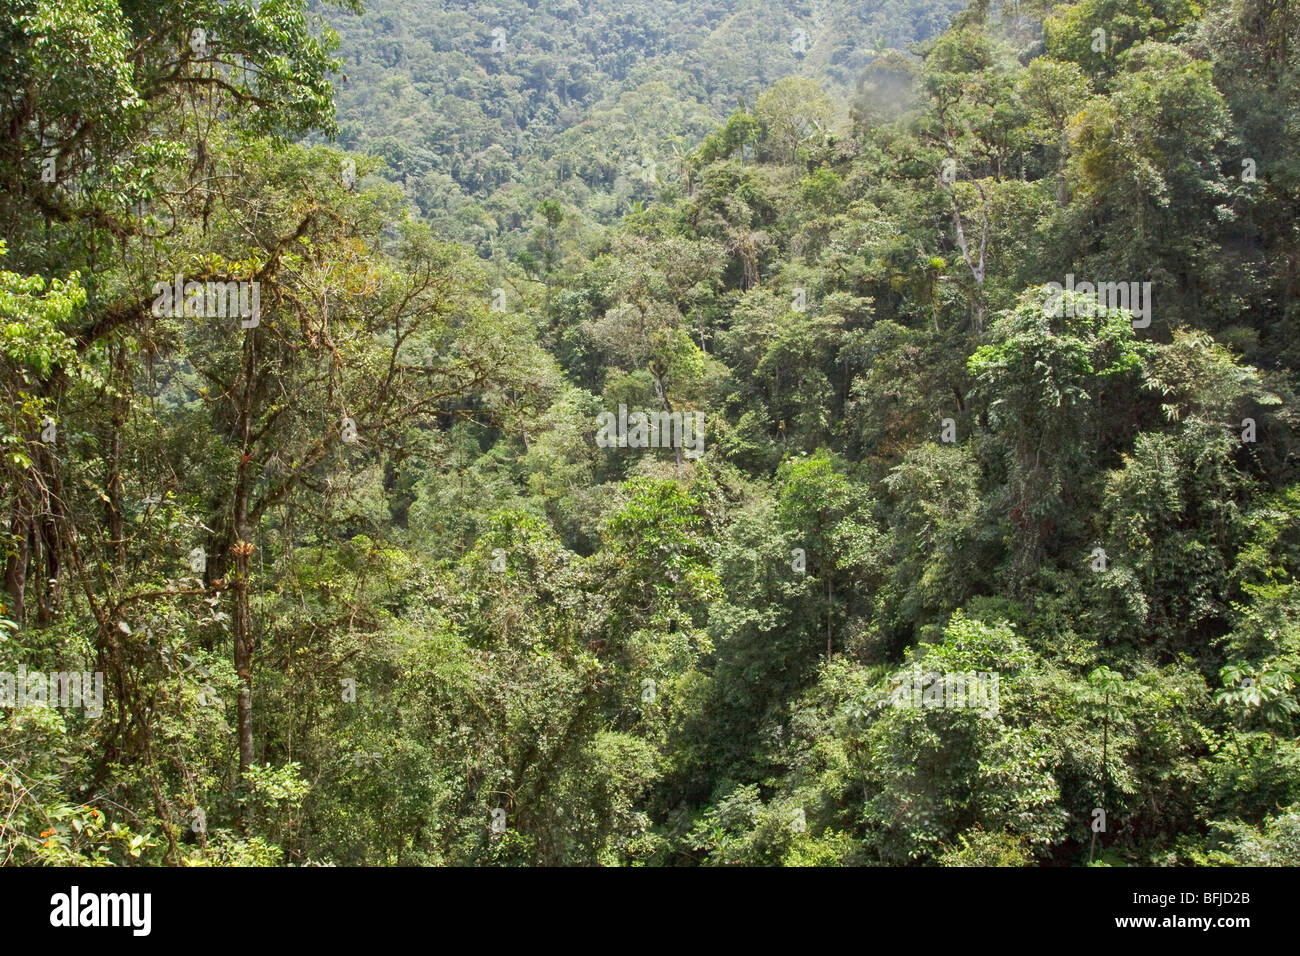 Une vue de la forêt tropicale dans la région de Podocarpus National Park dans le sud-est de l'Équateur. Banque D'Images